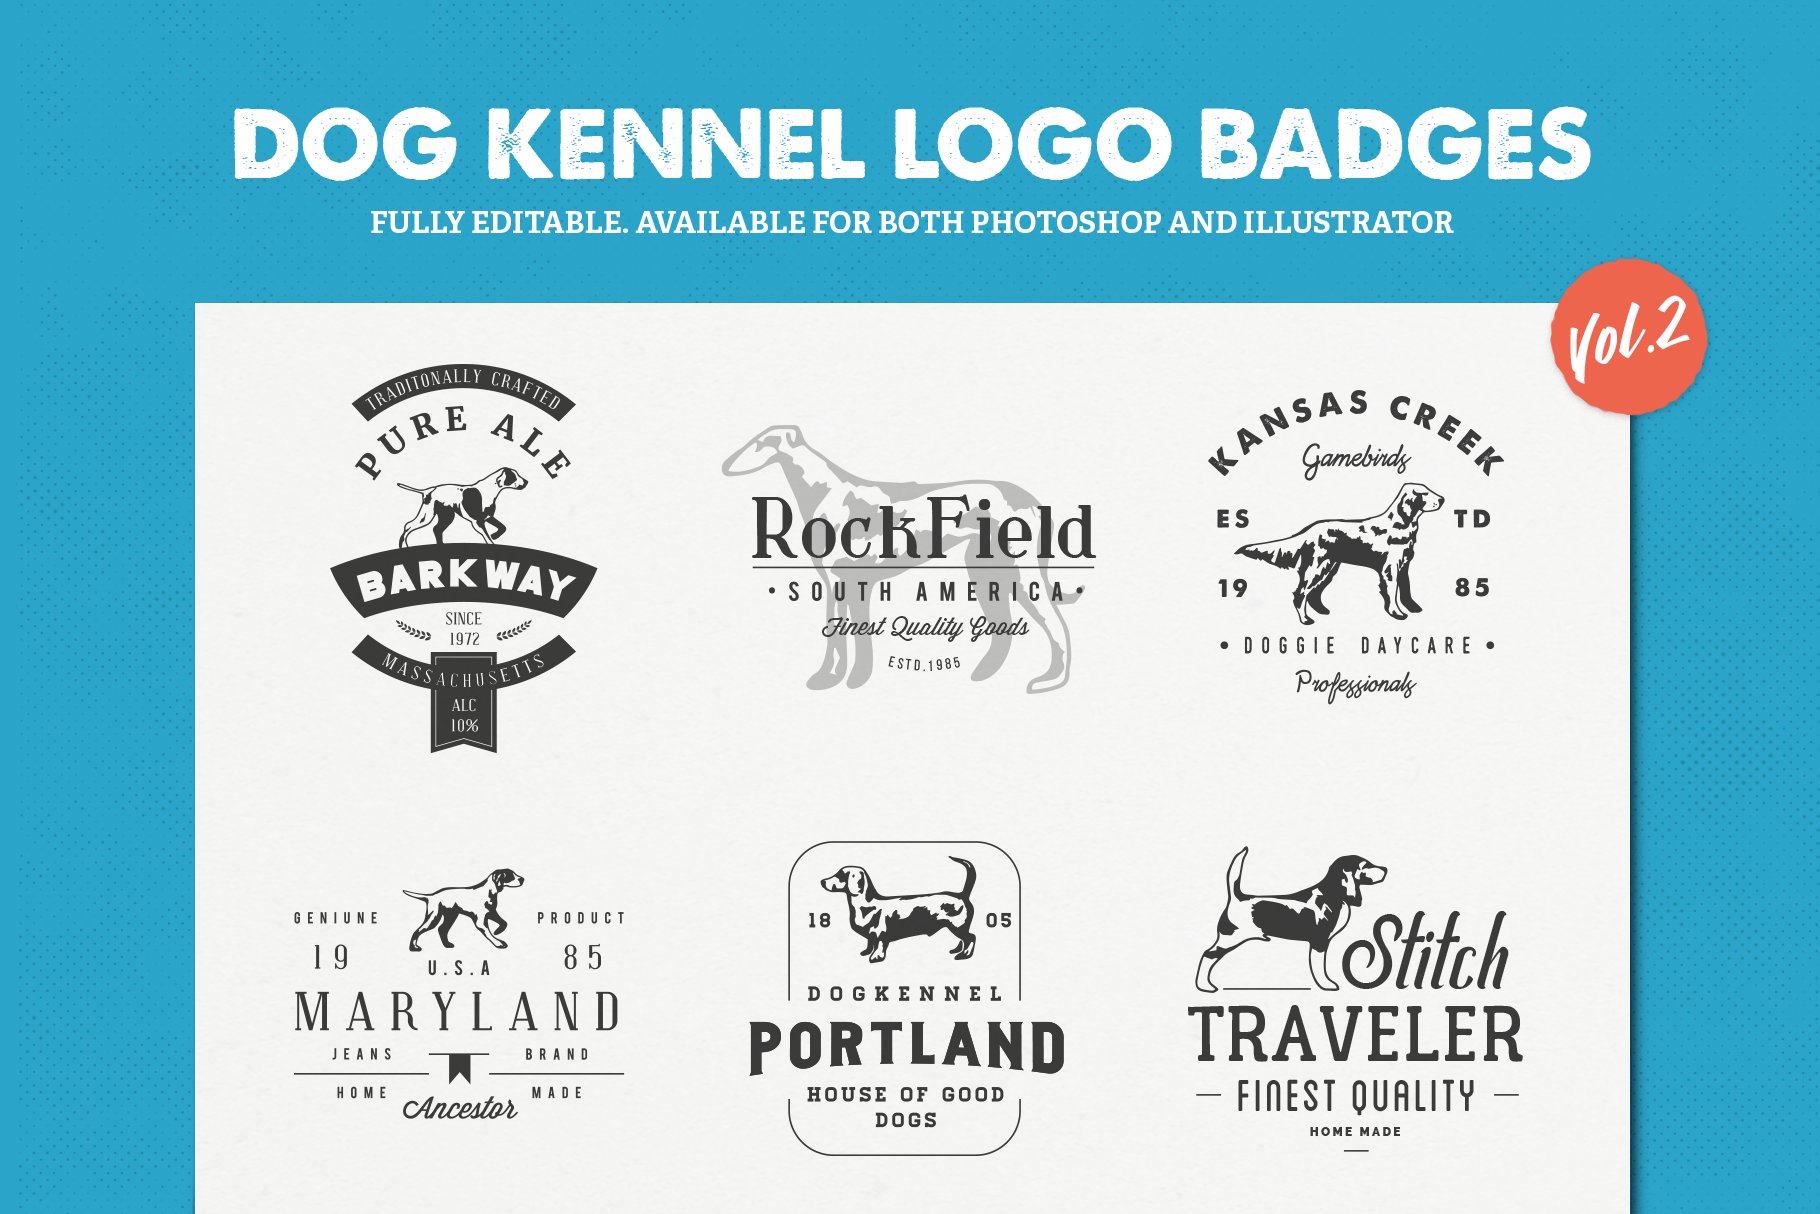 Dog Kennel Logo Badges Vol.2 cover image.